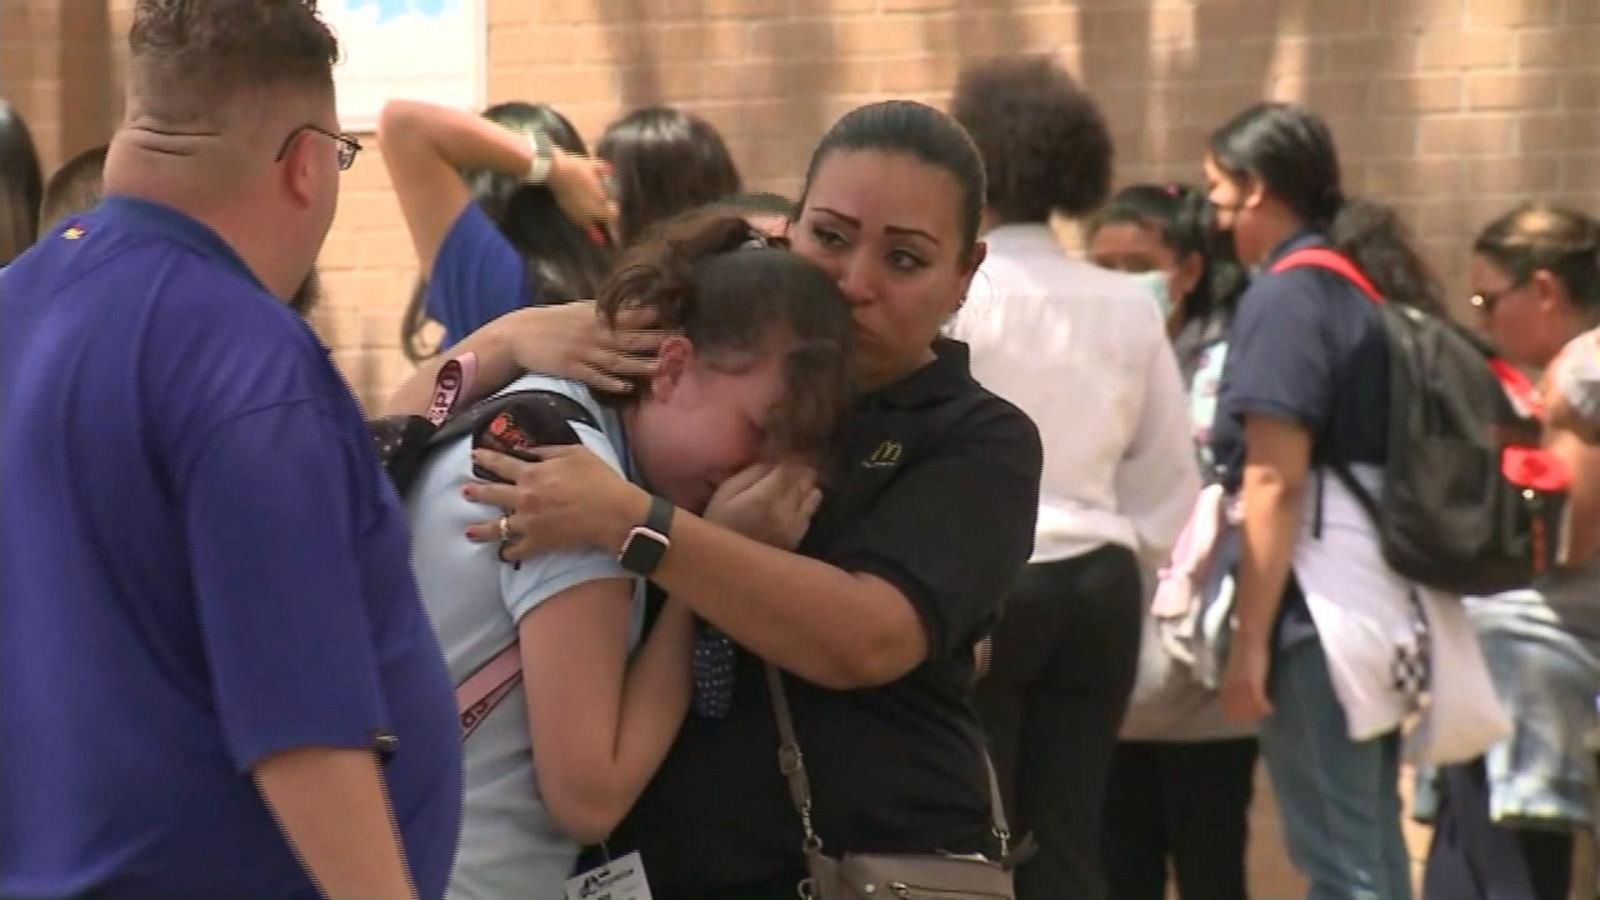 Police respond to Albuquerque school shooting - Good Morning America